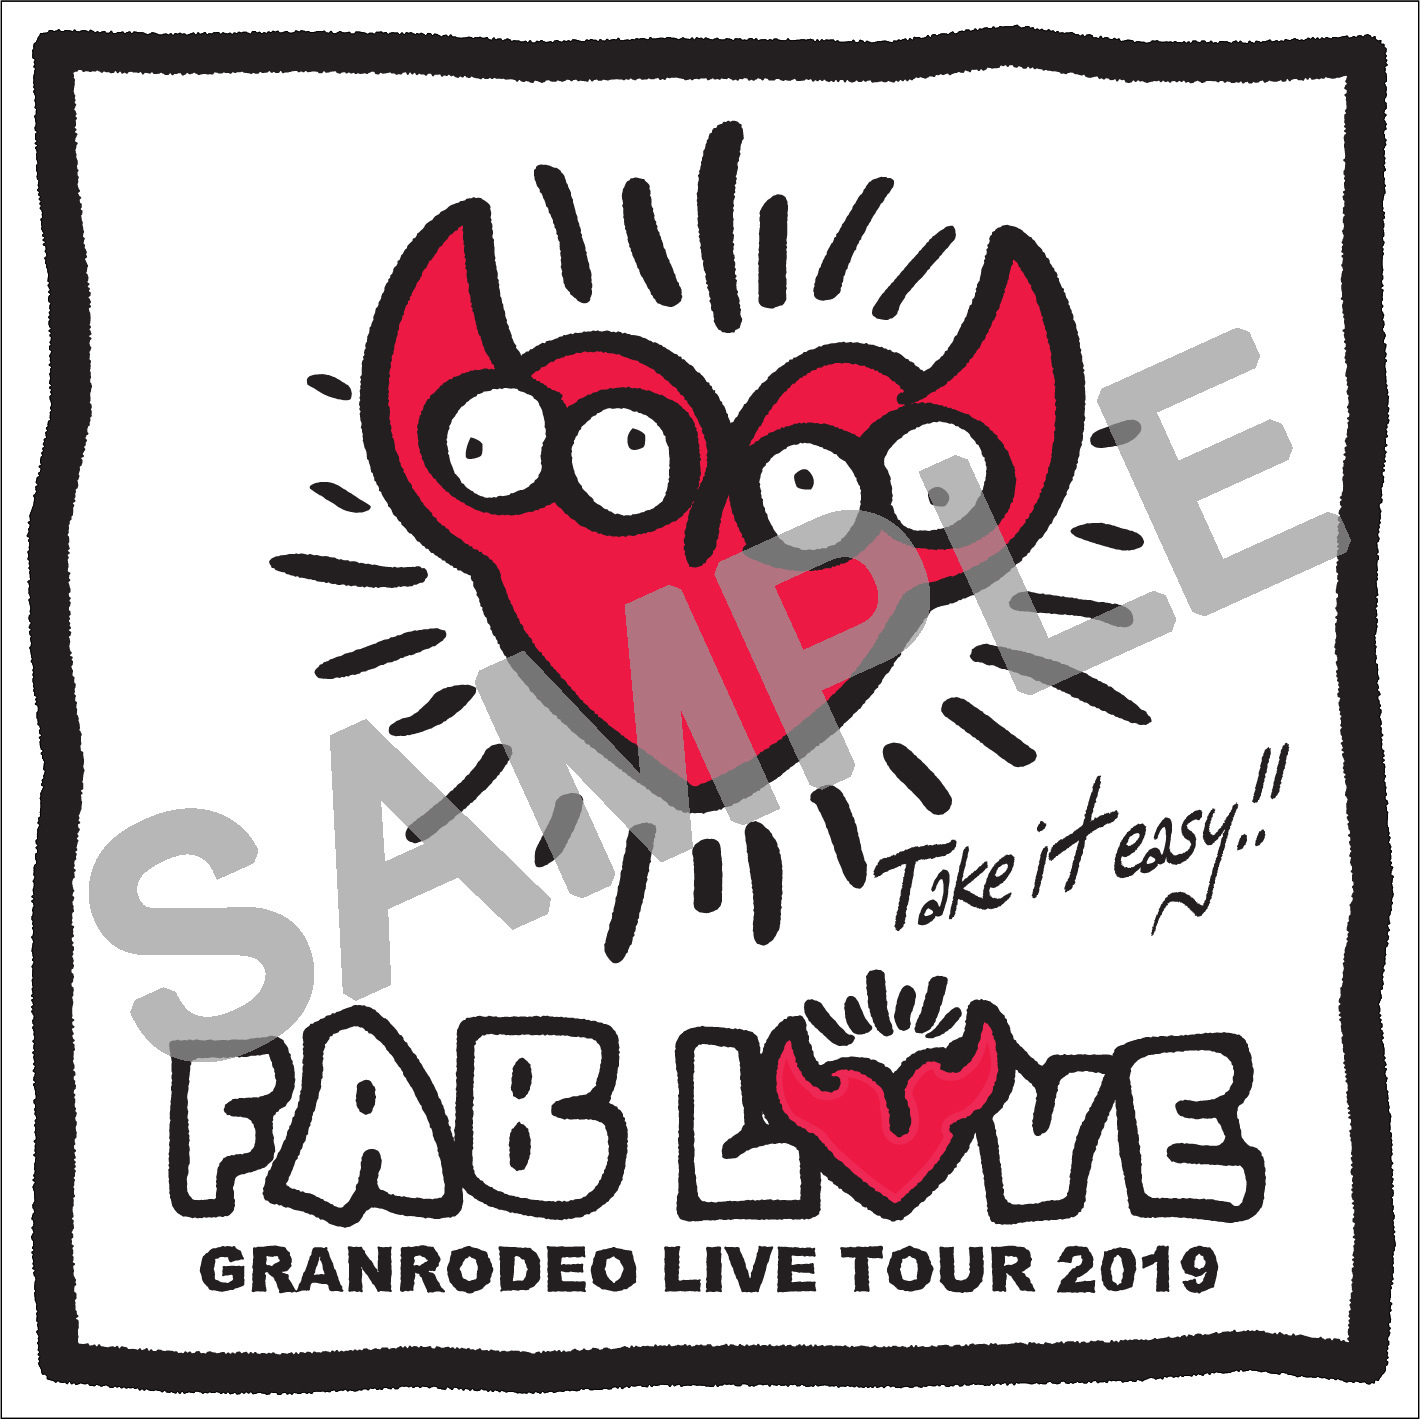 Granrodeo Granrodeo Live Tour 19 Fab Love Cd Dvd Blu Ray 特典決定 Highway Star Club